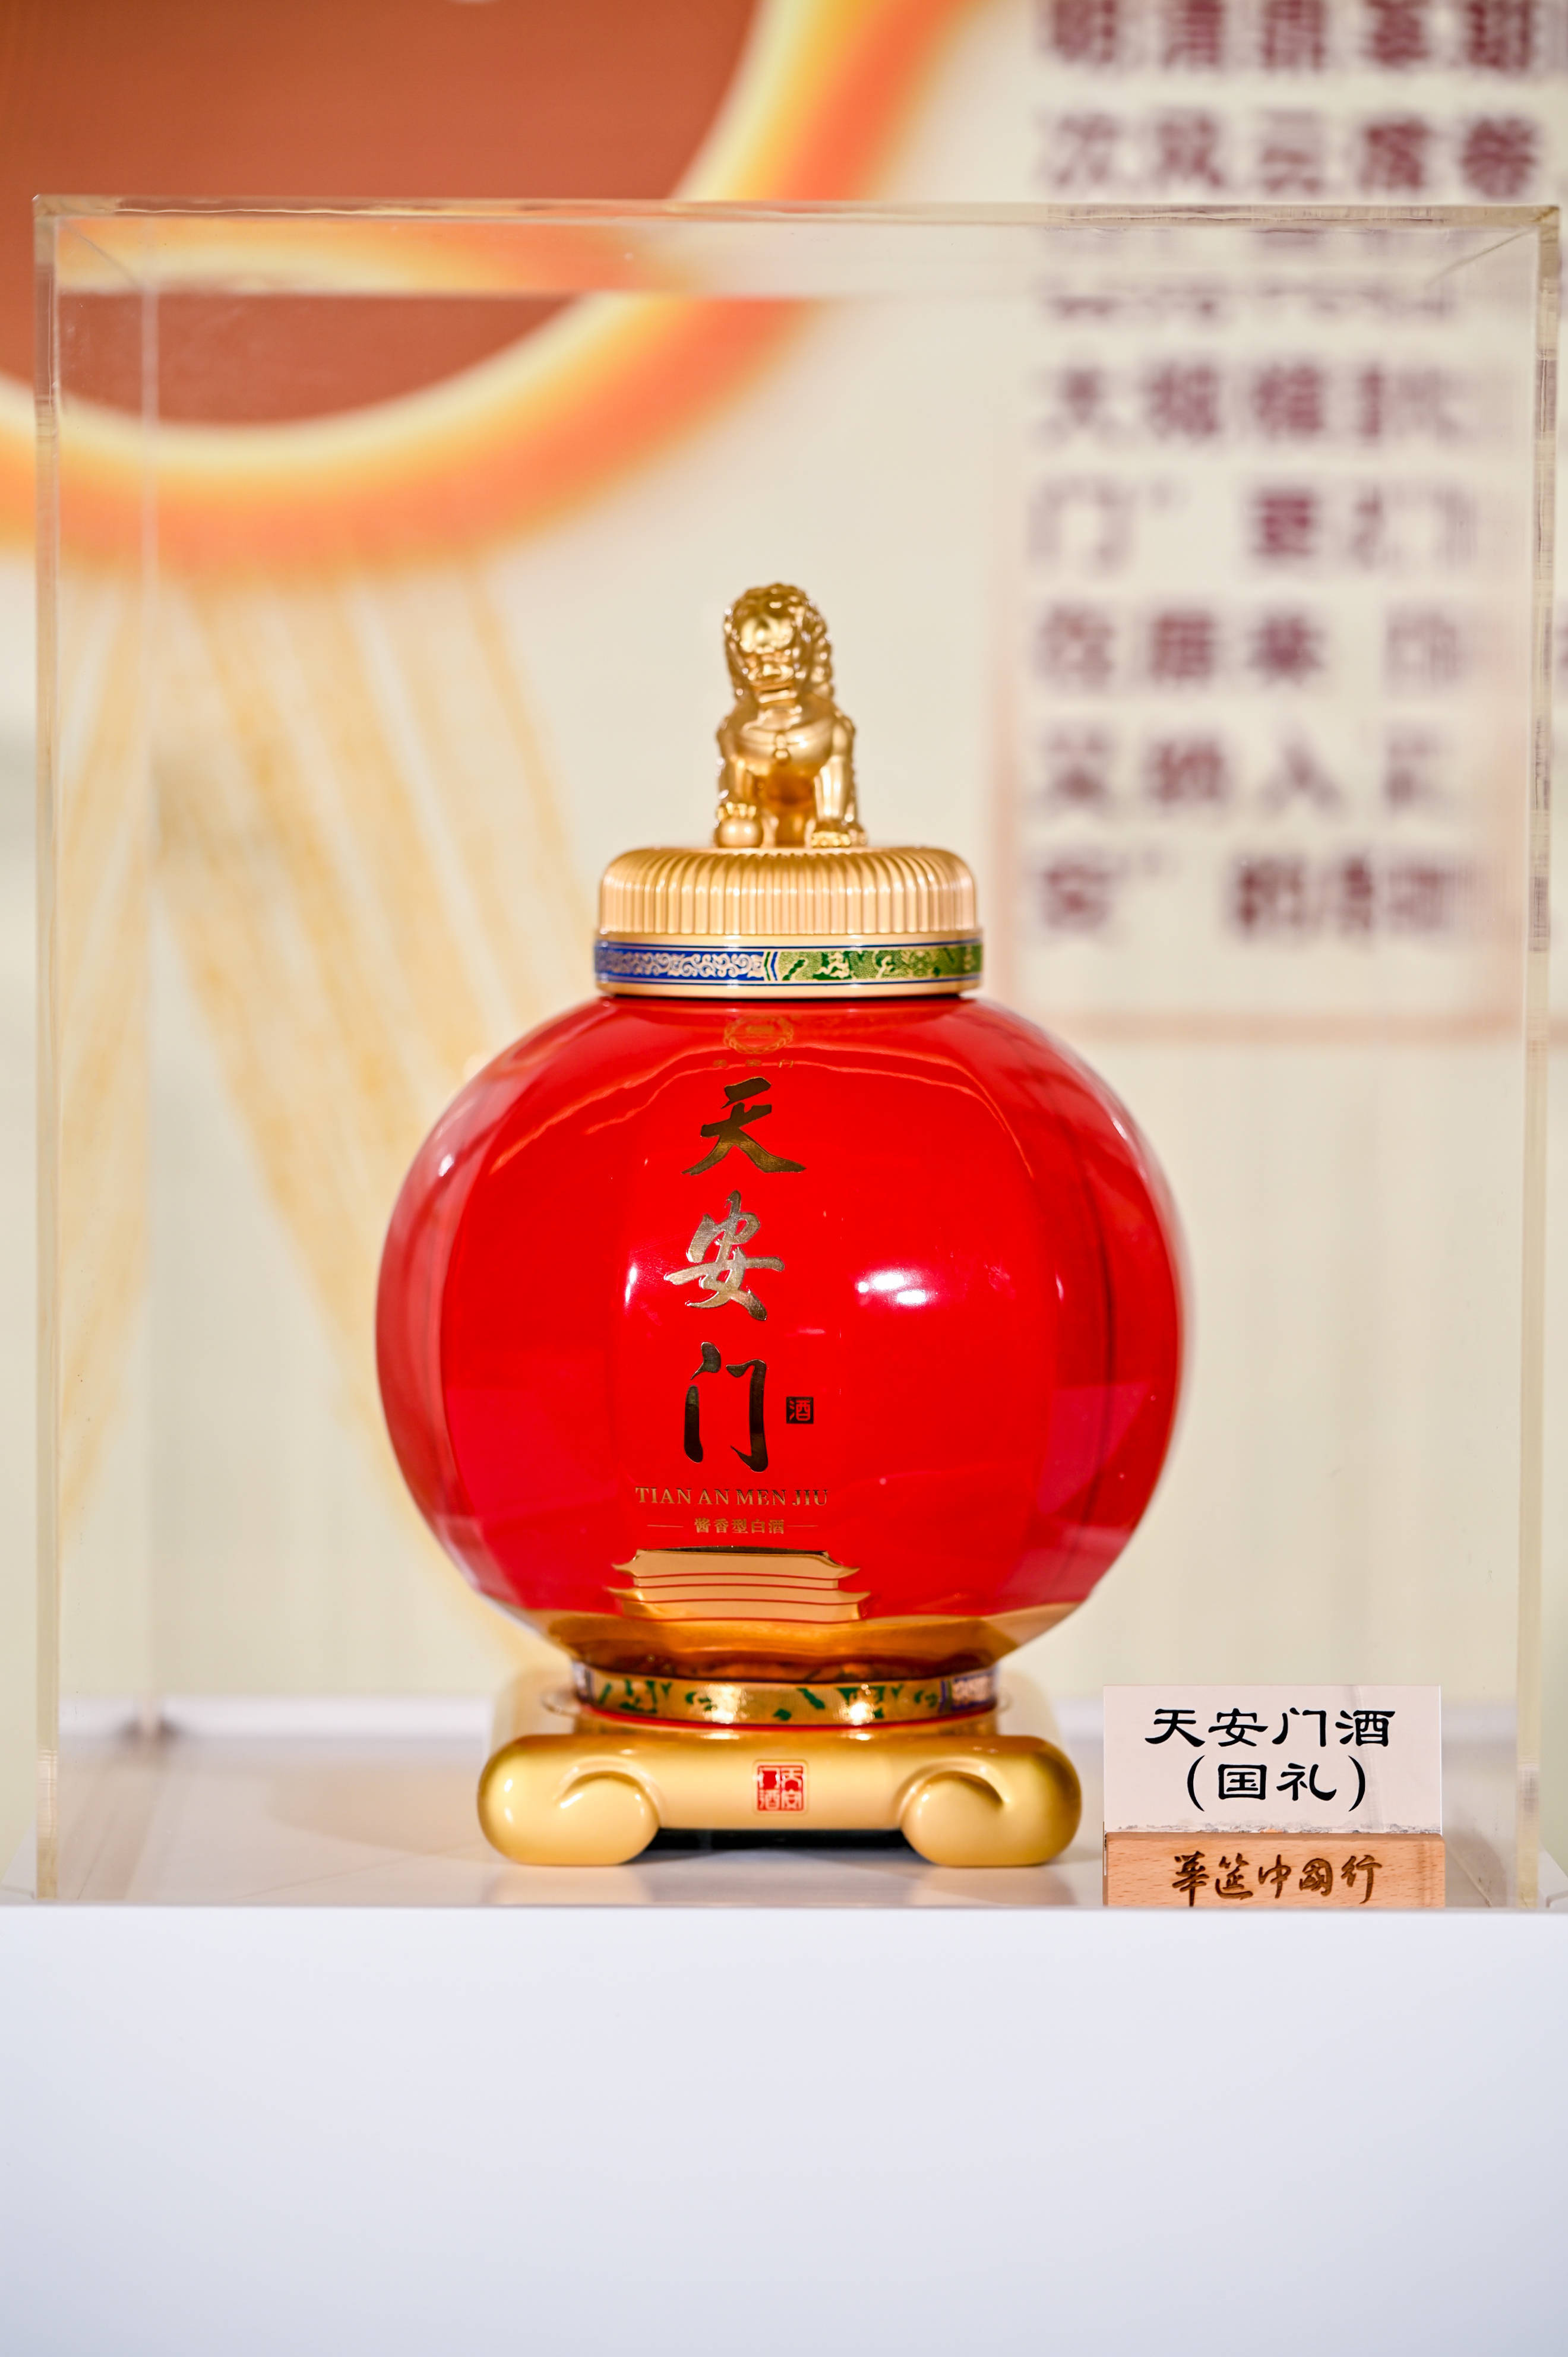 天安门酒国礼3l/坛 (6斤装),一款适合送礼收藏的高端酱酒